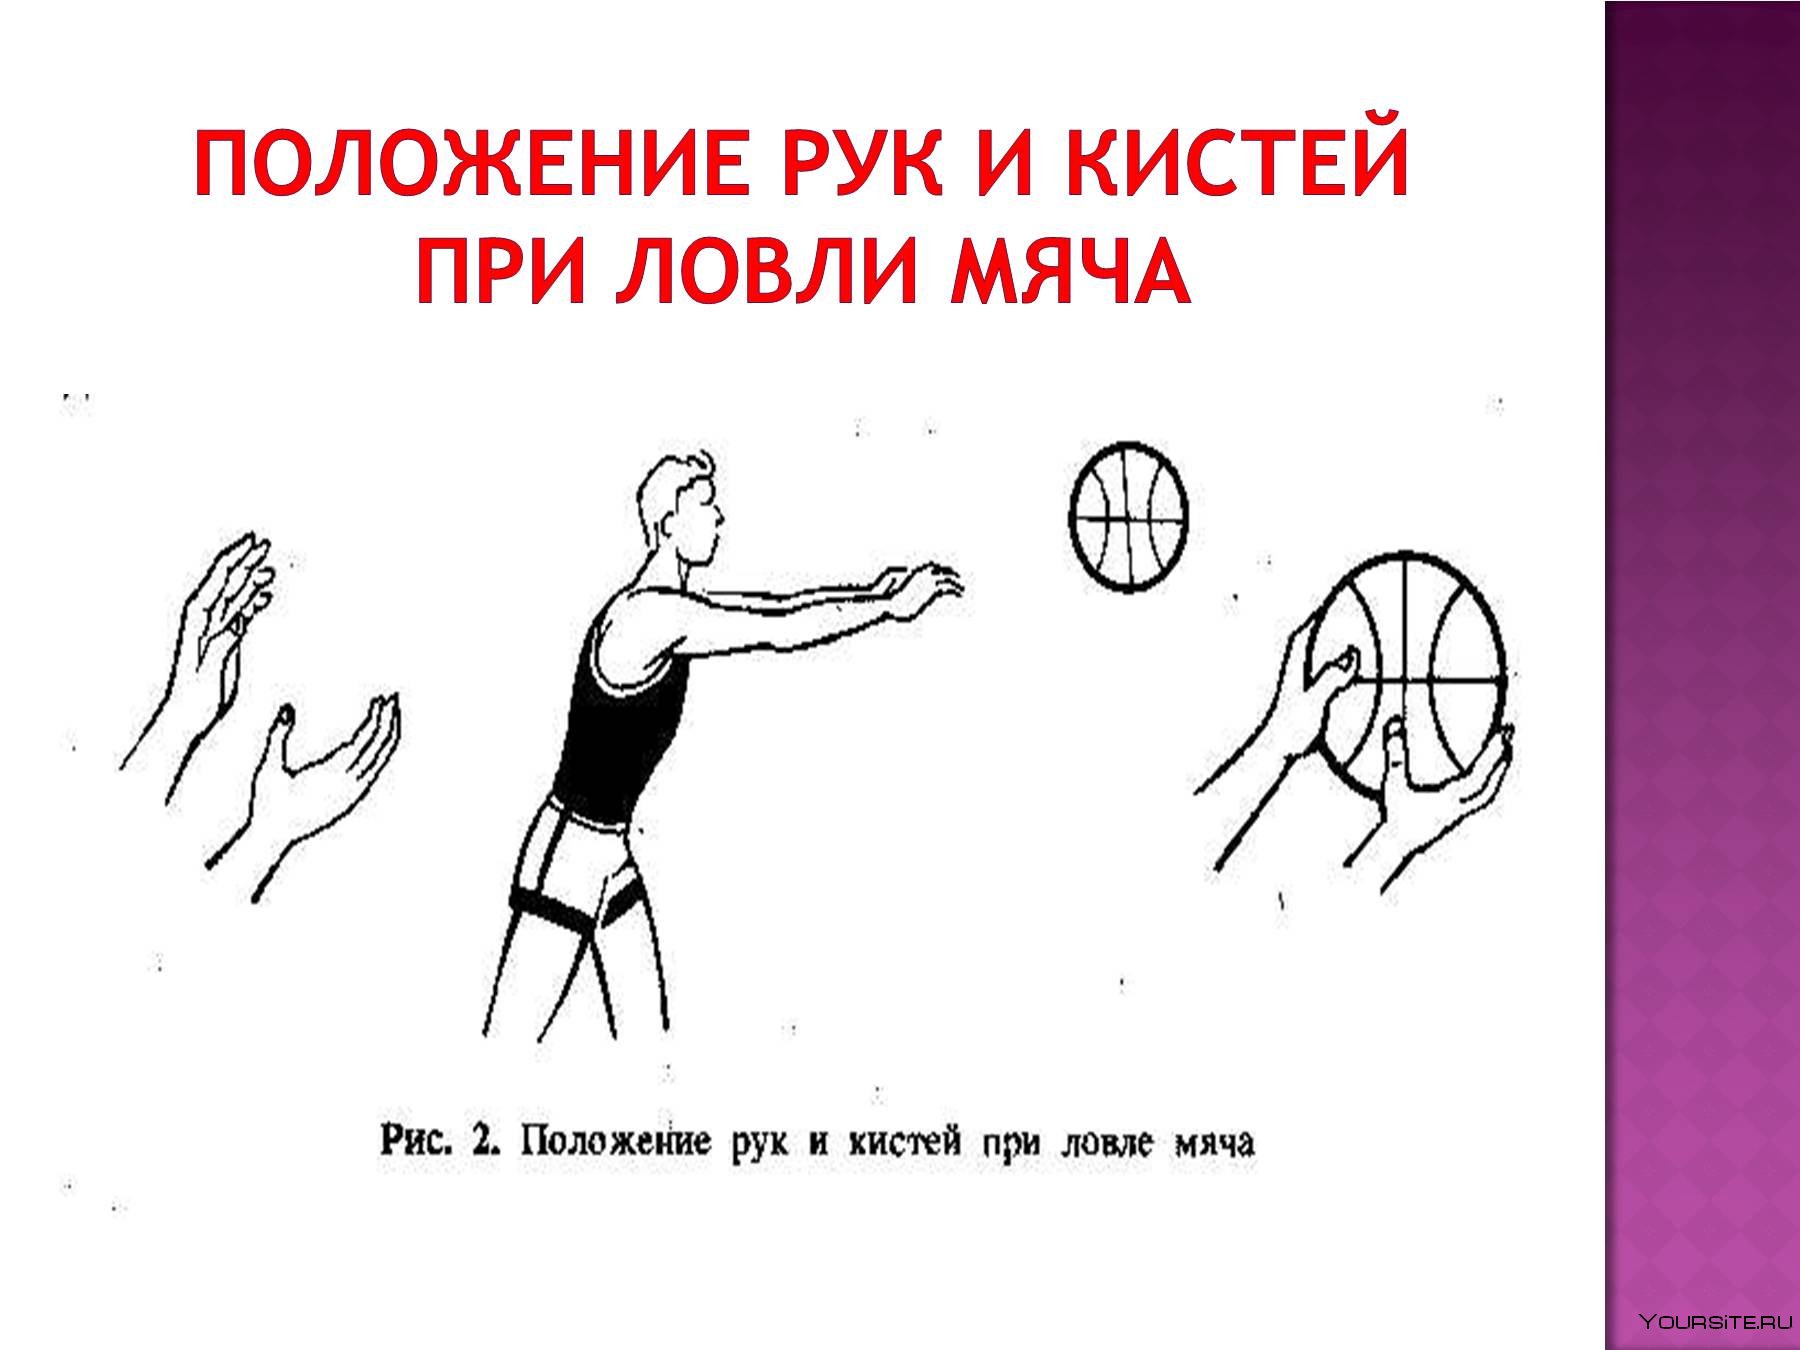 Тема ловля мяча. Техника передачи мяча от груди.баскетбол двумя. Техника передачи баскетбольного мяча двумя руками. Ловля и передача мяча в движении в баскетболе. Техника ловли мяча в баскетболе.